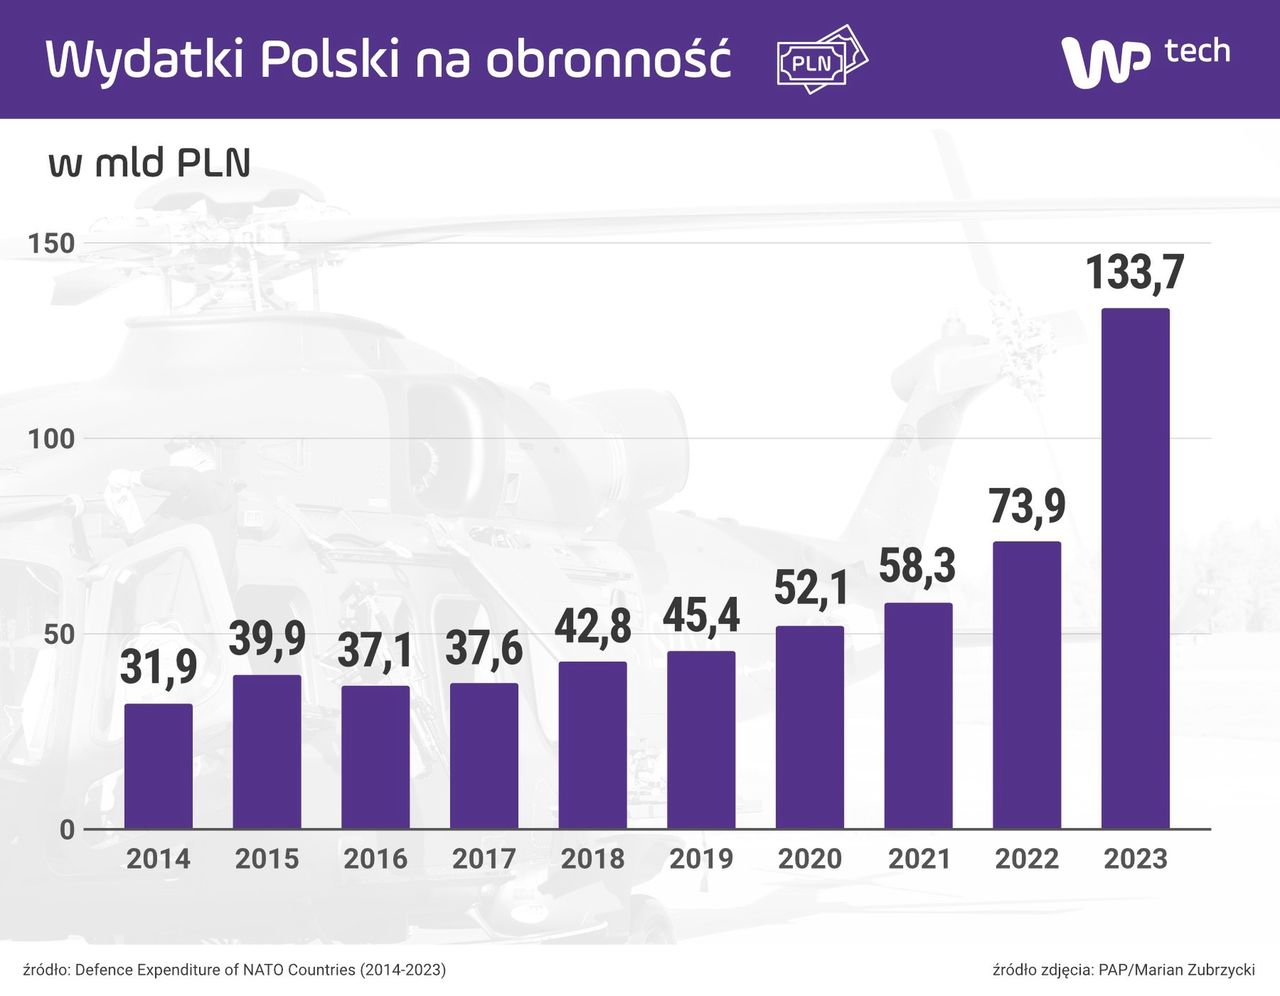 Wydatki Polski na obronność według NATO w latach 2014-2023